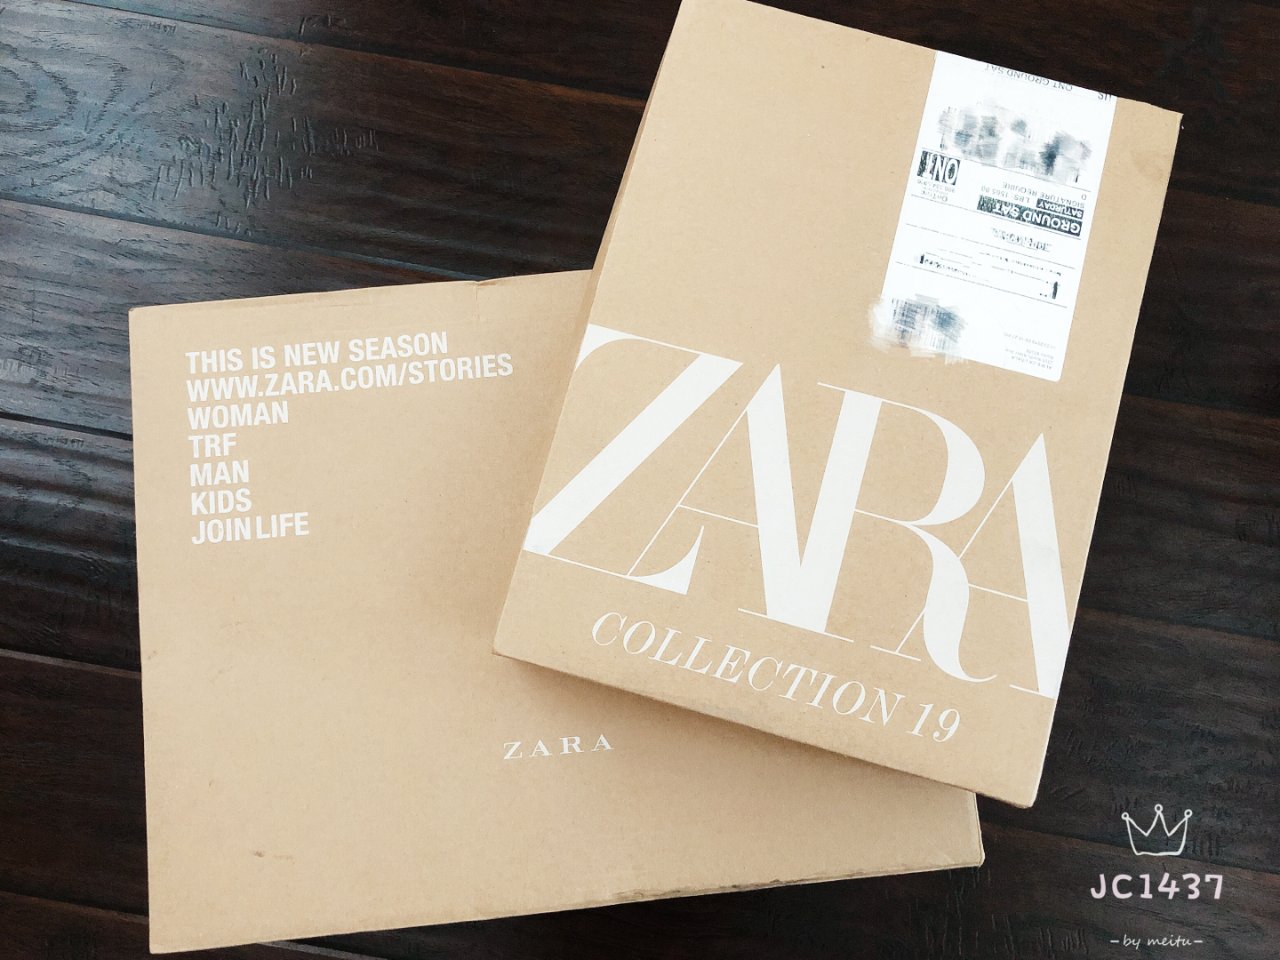 Zara,黑五记账本